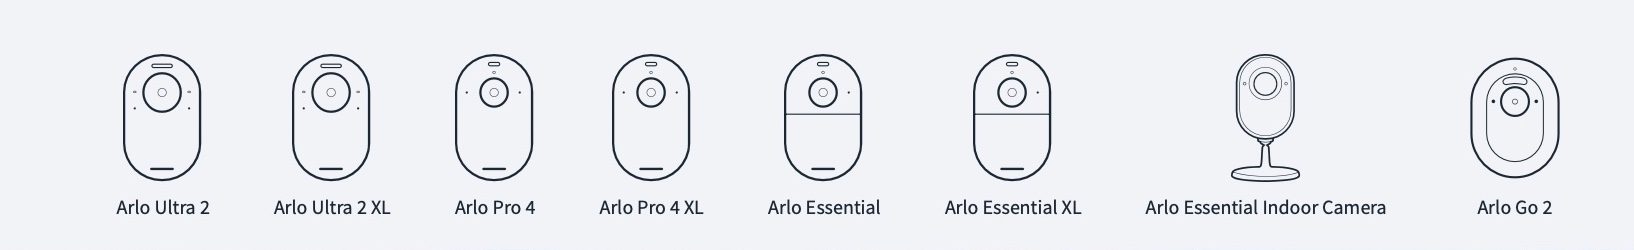 Telecamere e accessori Arlo già in sconto per il Black Friday, compatibili con Alexa, Homekit e Google